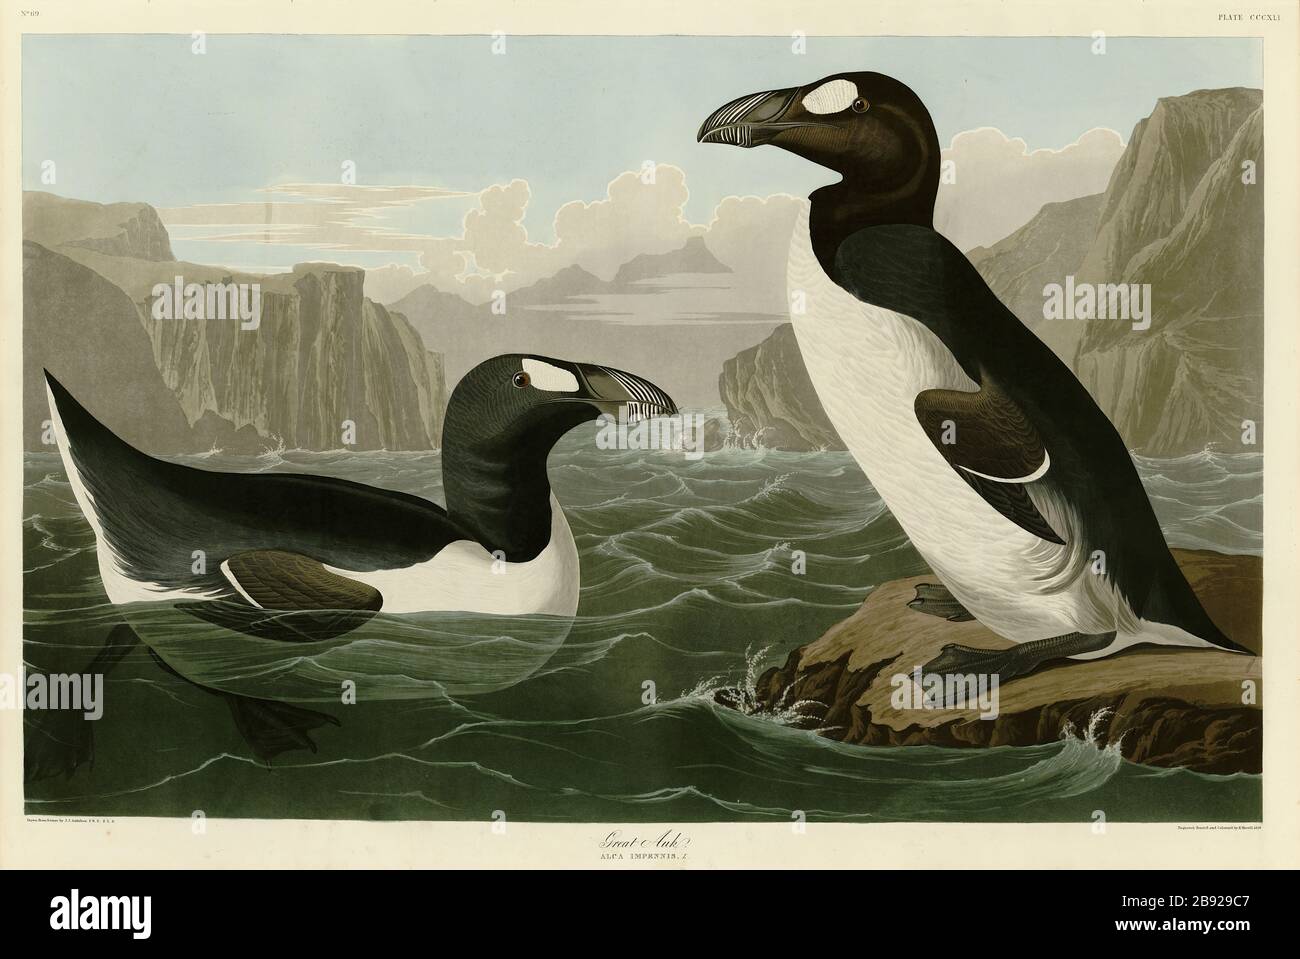 Platte 341 Great Auk, von The Birds of America Folio (187-184) von John James Audubon - sehr hochauflösendes und qualitativ hochwertiges bearbeitetes Bild Stockfoto